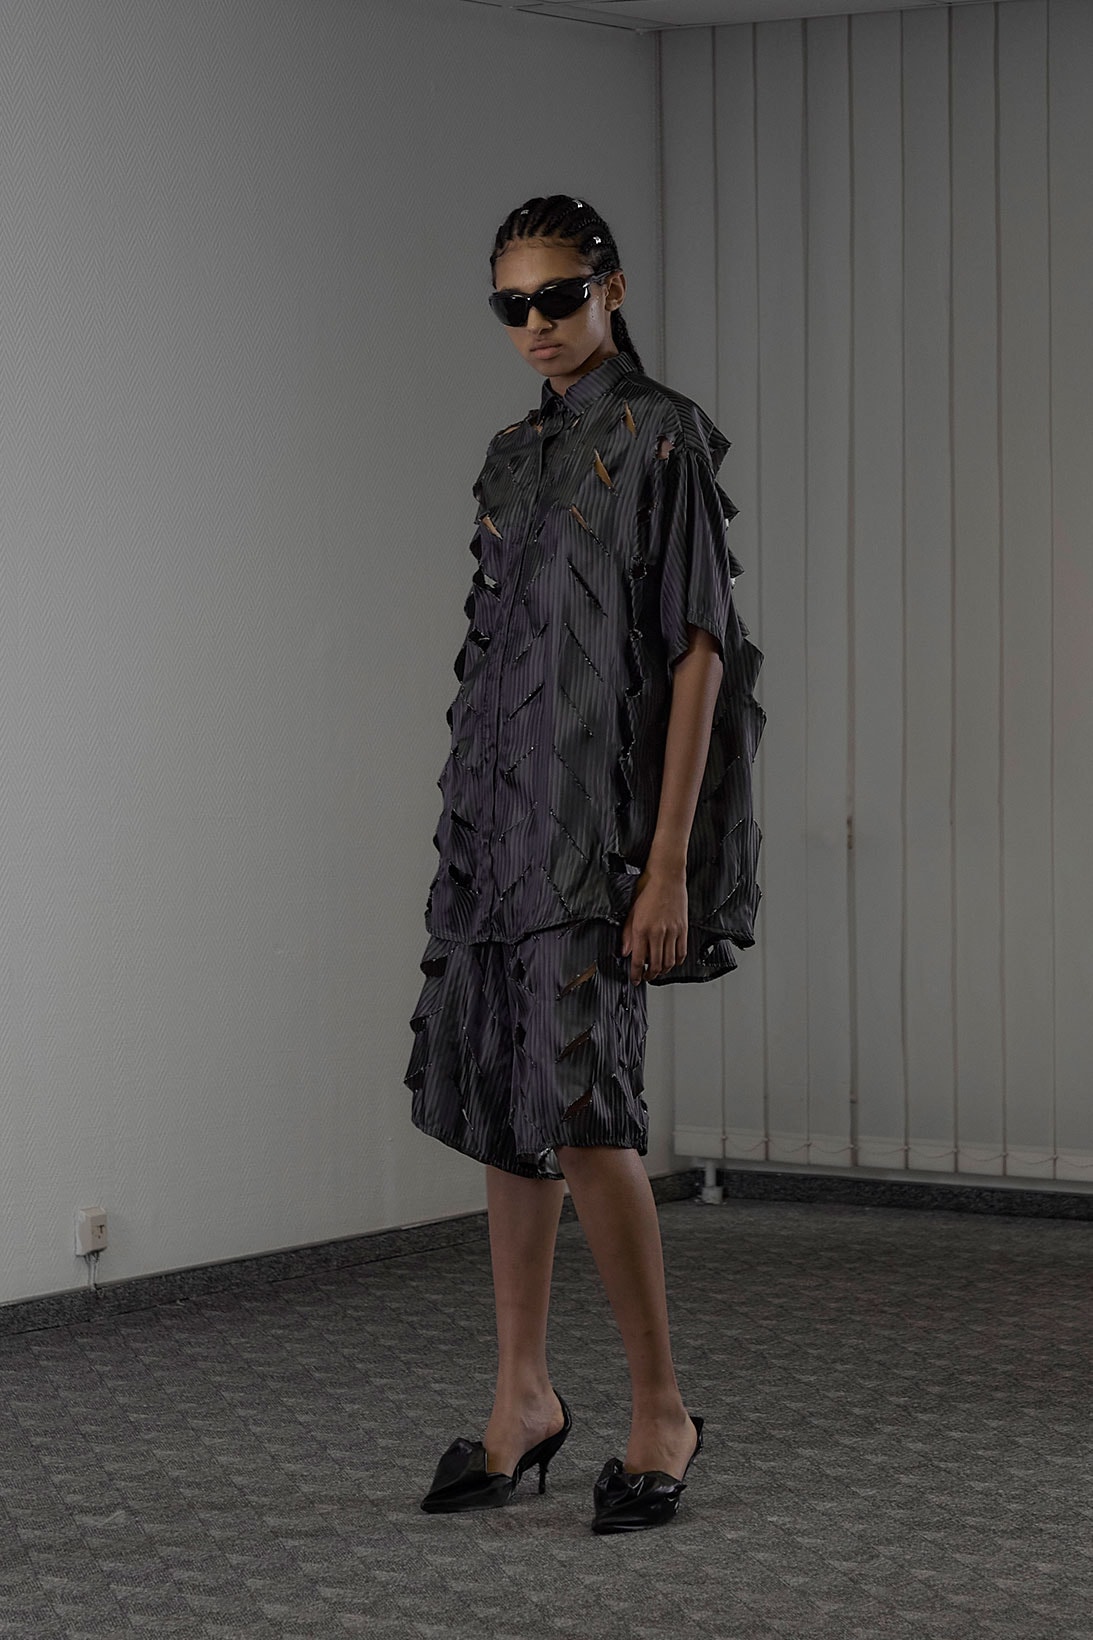 Sia Arnika Spring/Summer 2023 Collection Paris Fashion Week Emerging Designer Images RElease